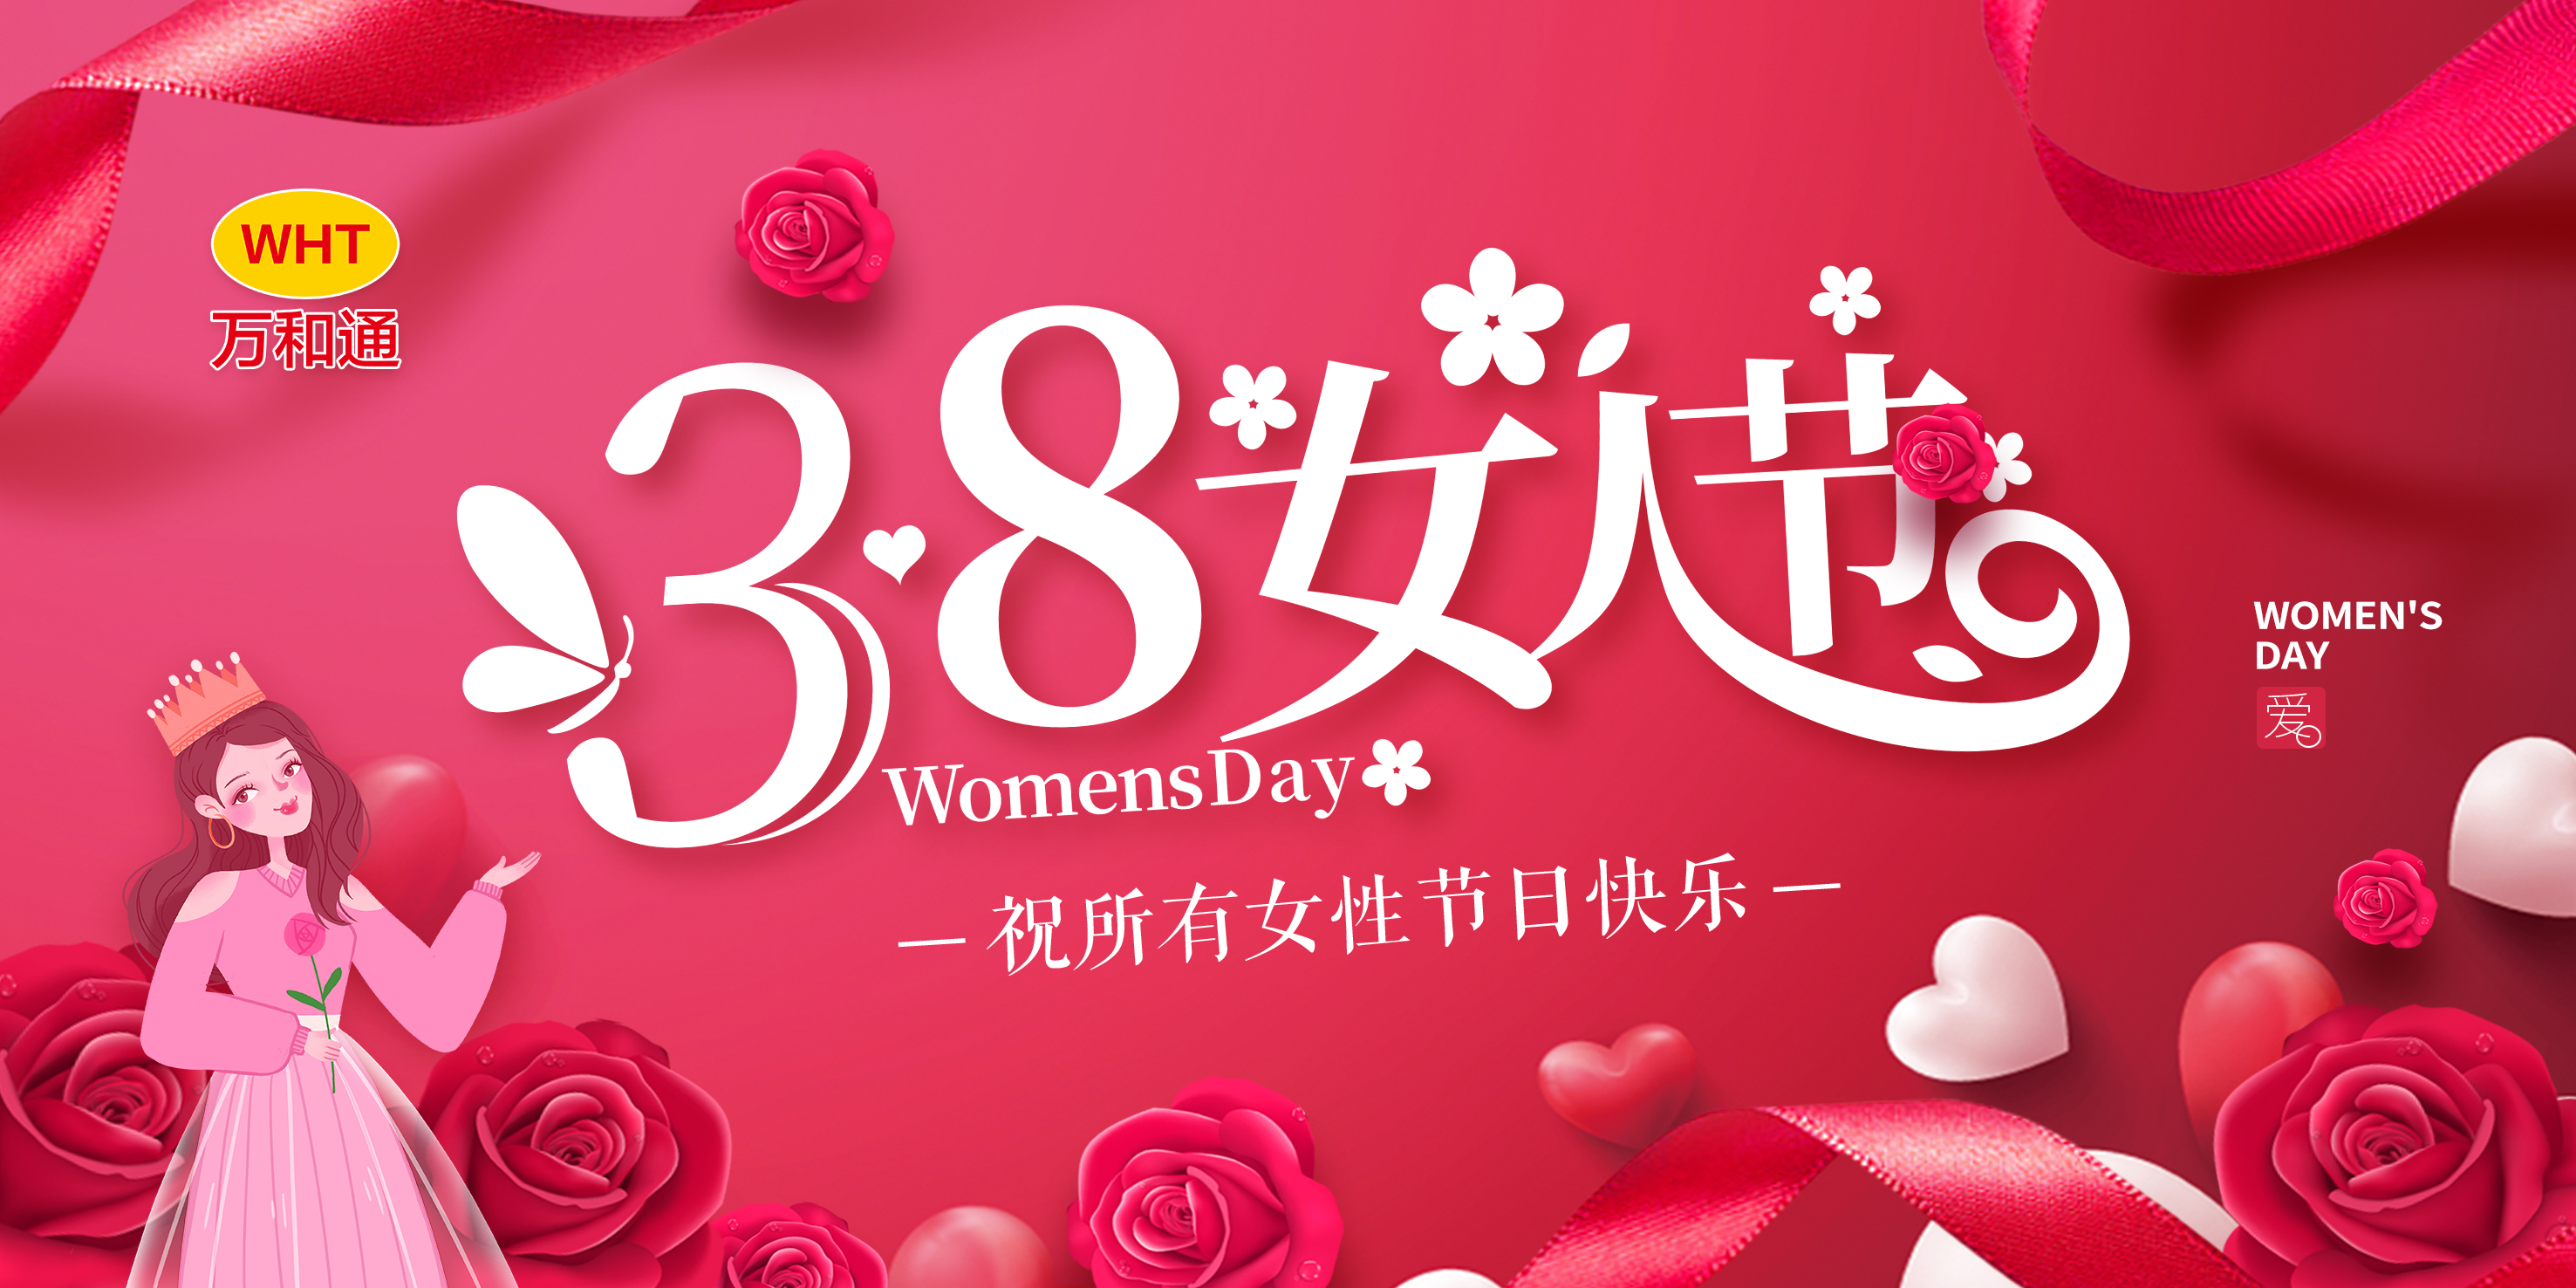 庆祝三八妇女节！